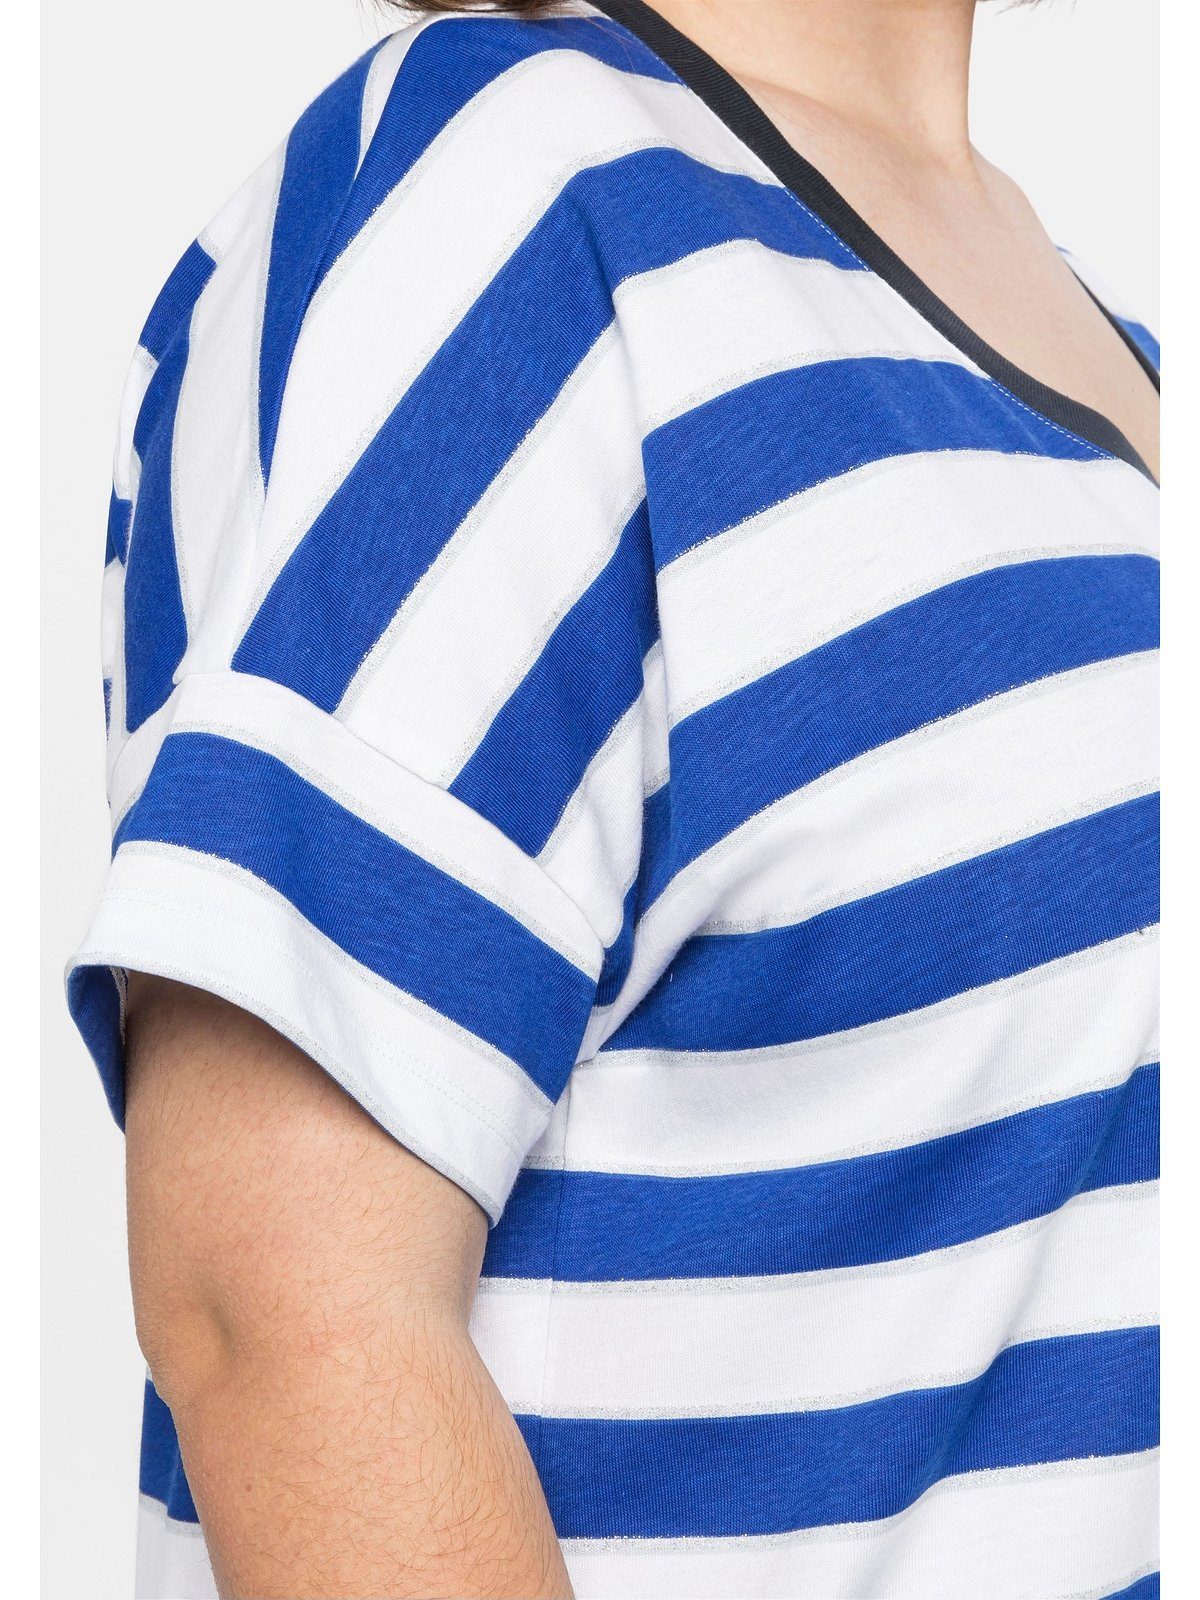 Oversize-Form Größen Glitzergarn, in Sheego royalblau-weiß T-Shirt mit Große